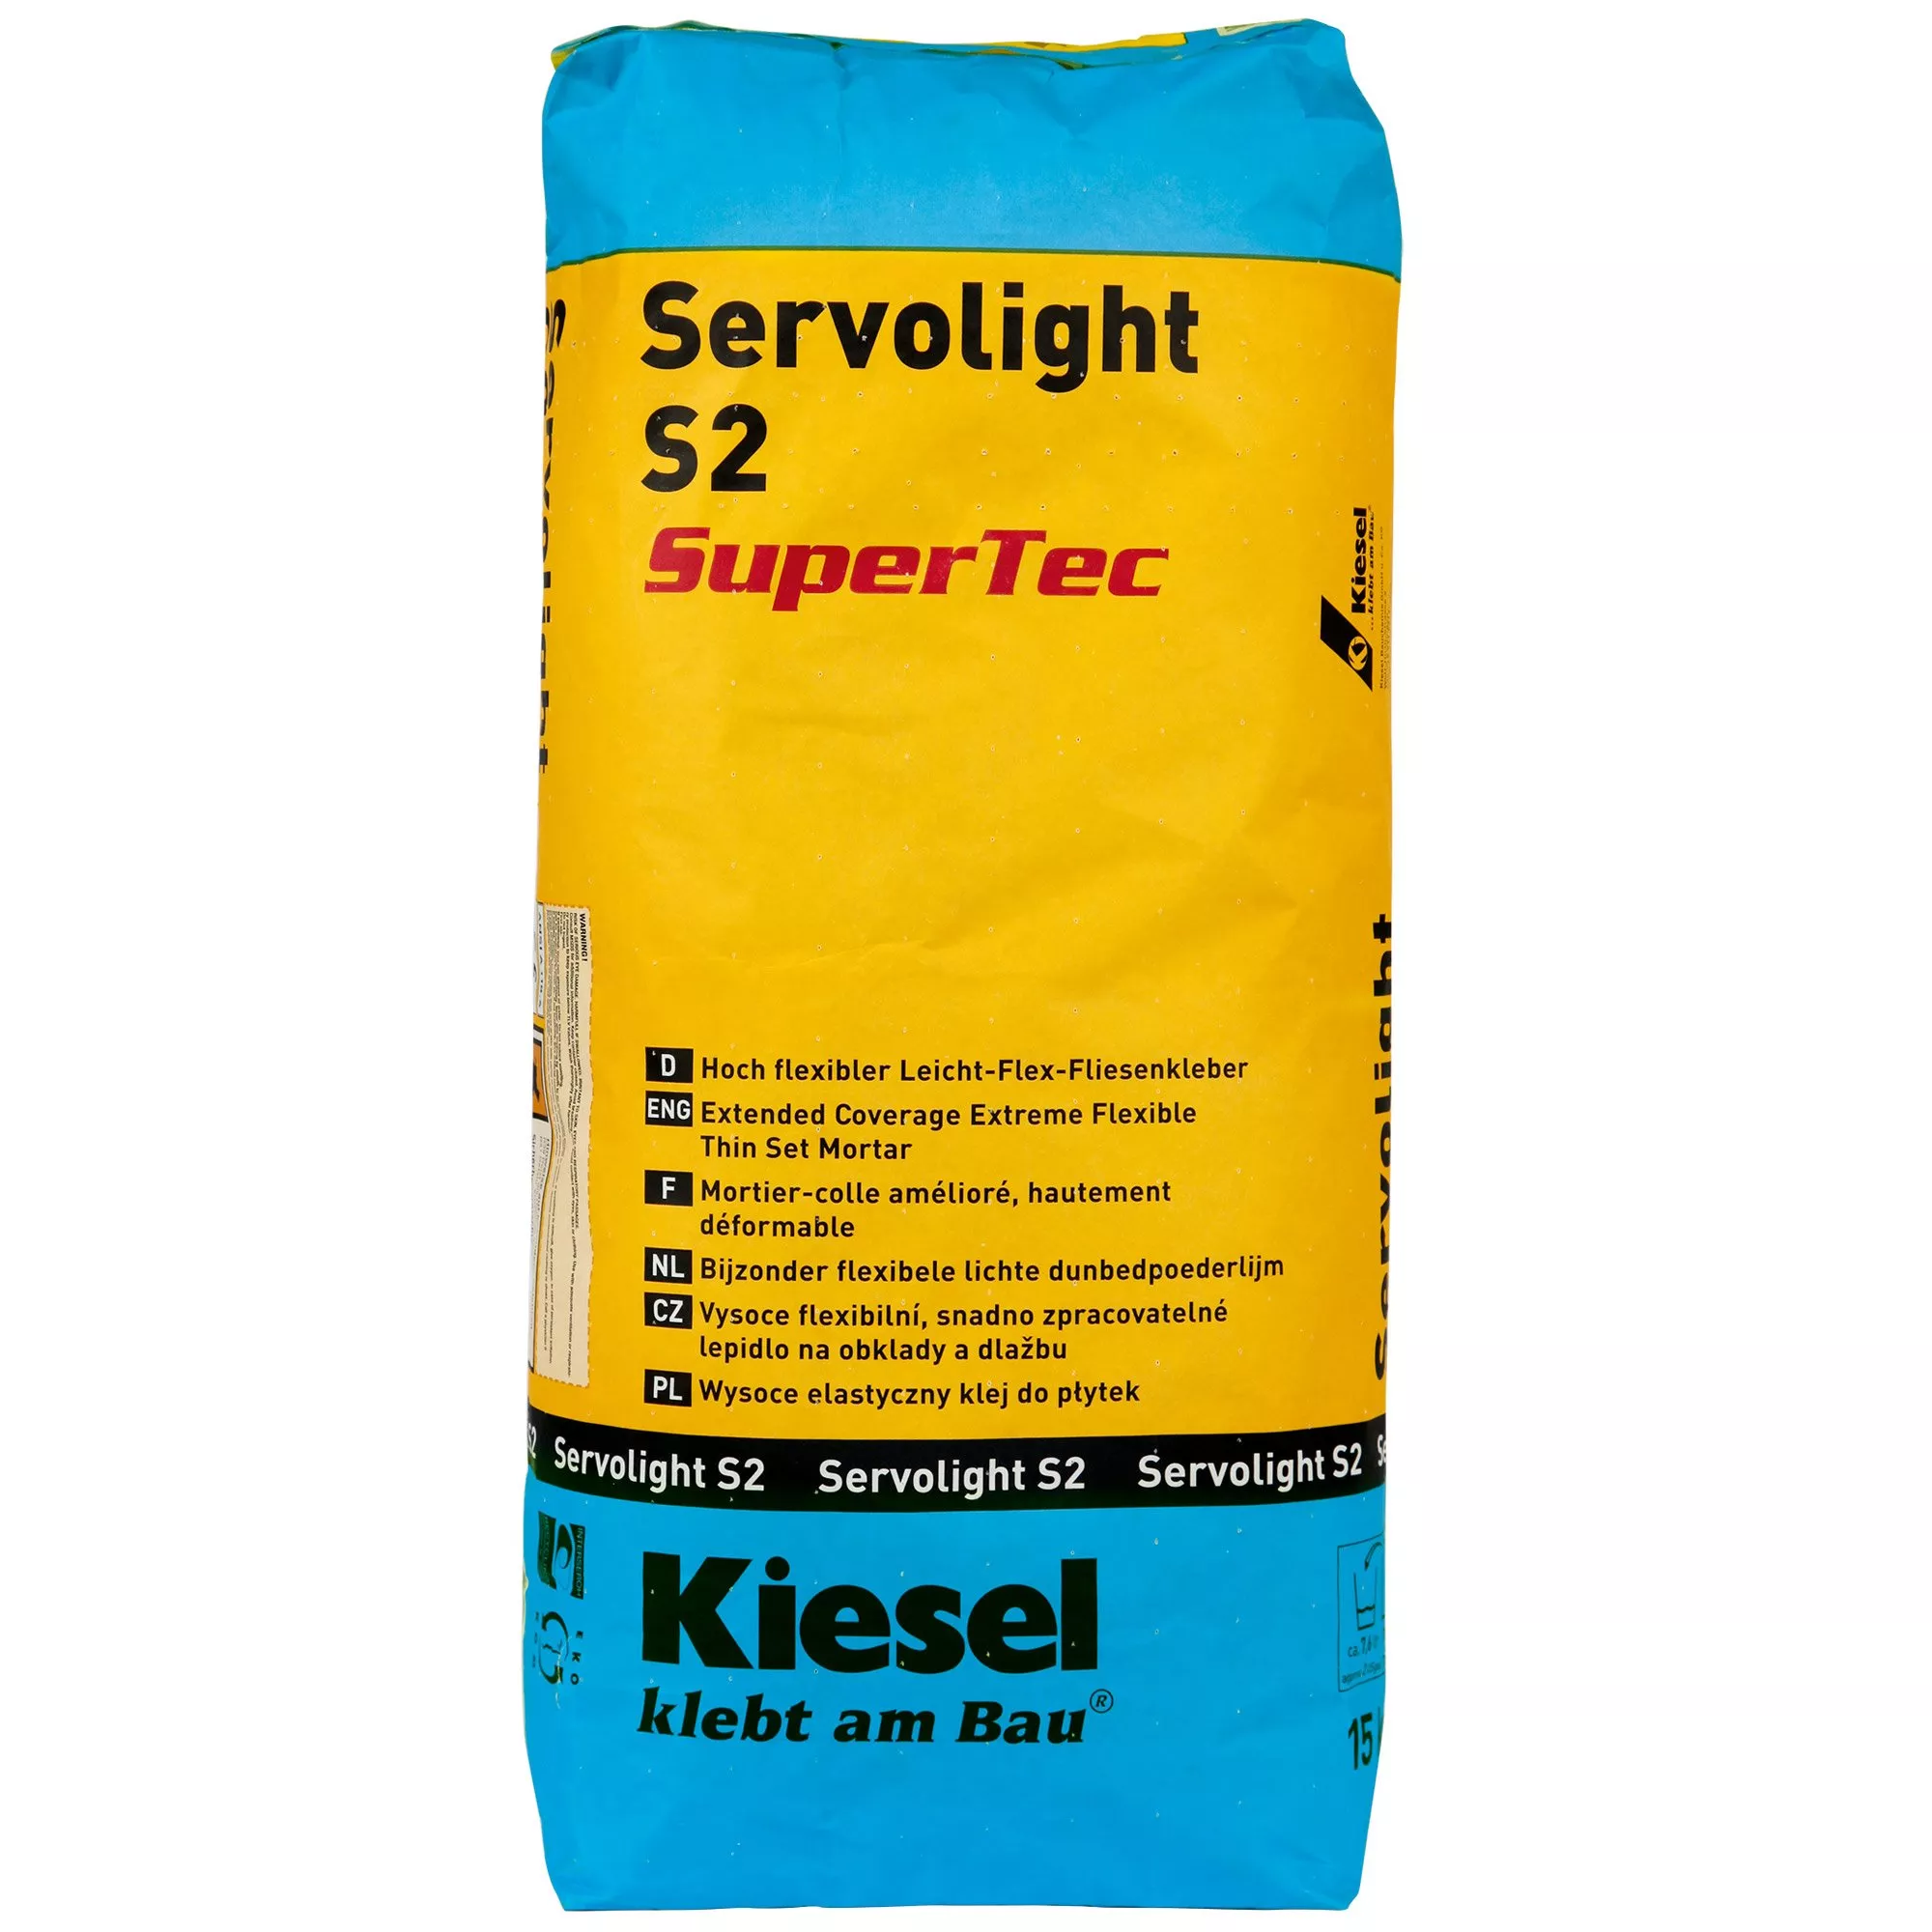 Kiesel Servolight S2 SuperTec - Hoch flexibler Leicht-Flex-Fliesenkleber (15KG)